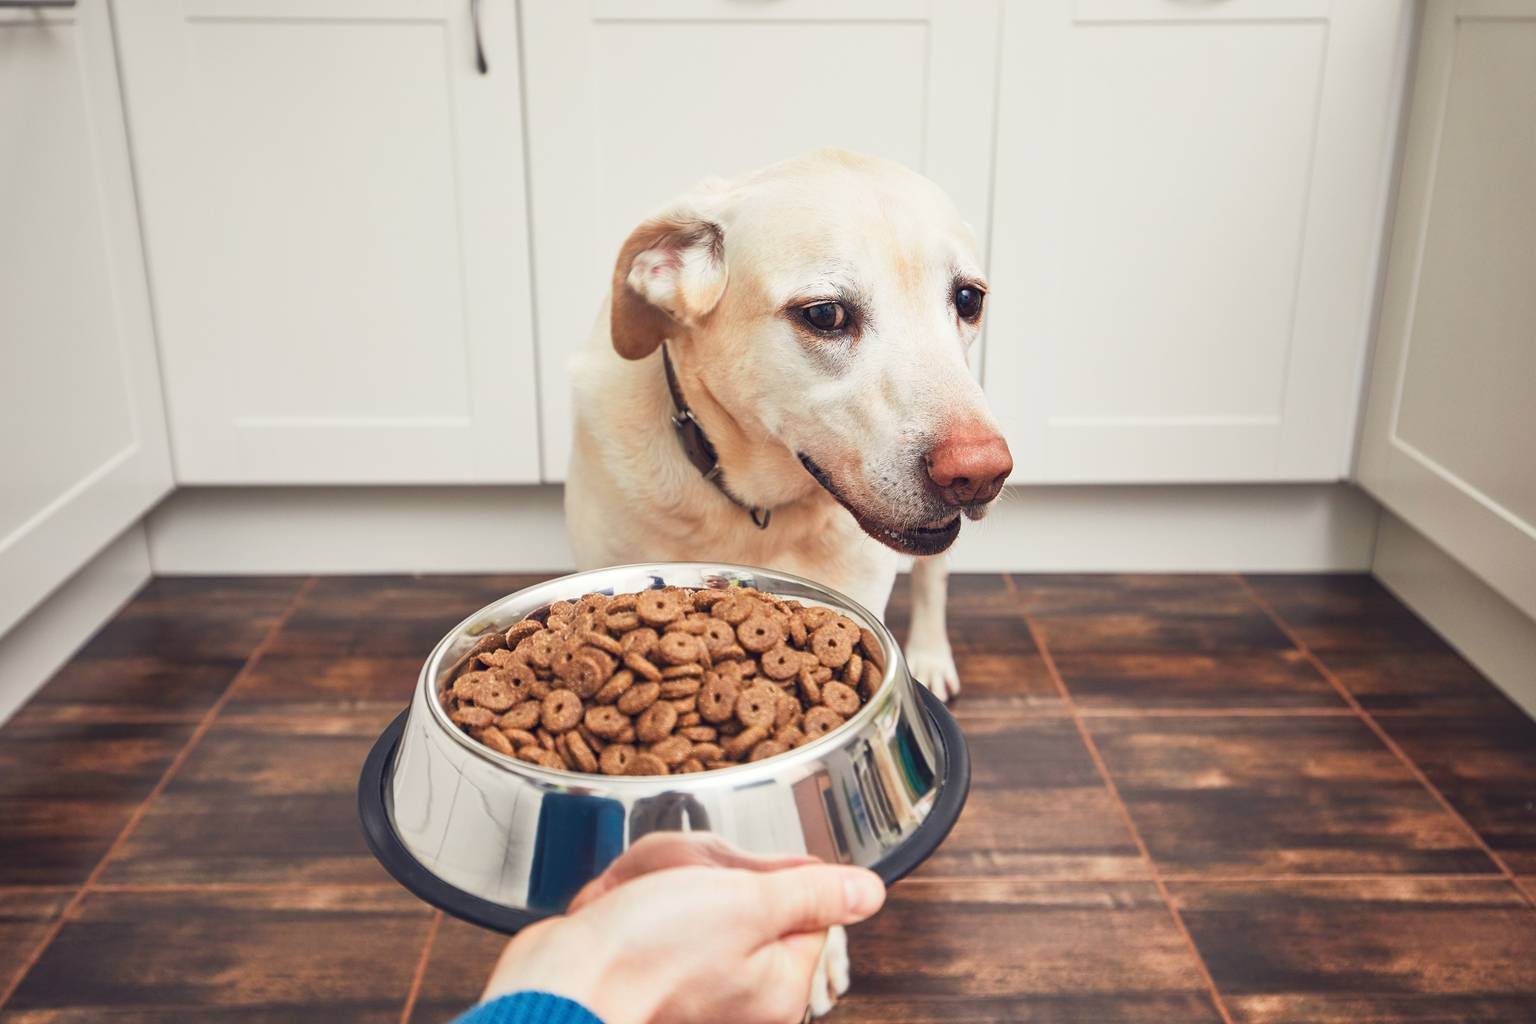 О том, чем лучше кормить собаку: натуральной пищей или сухим кормом